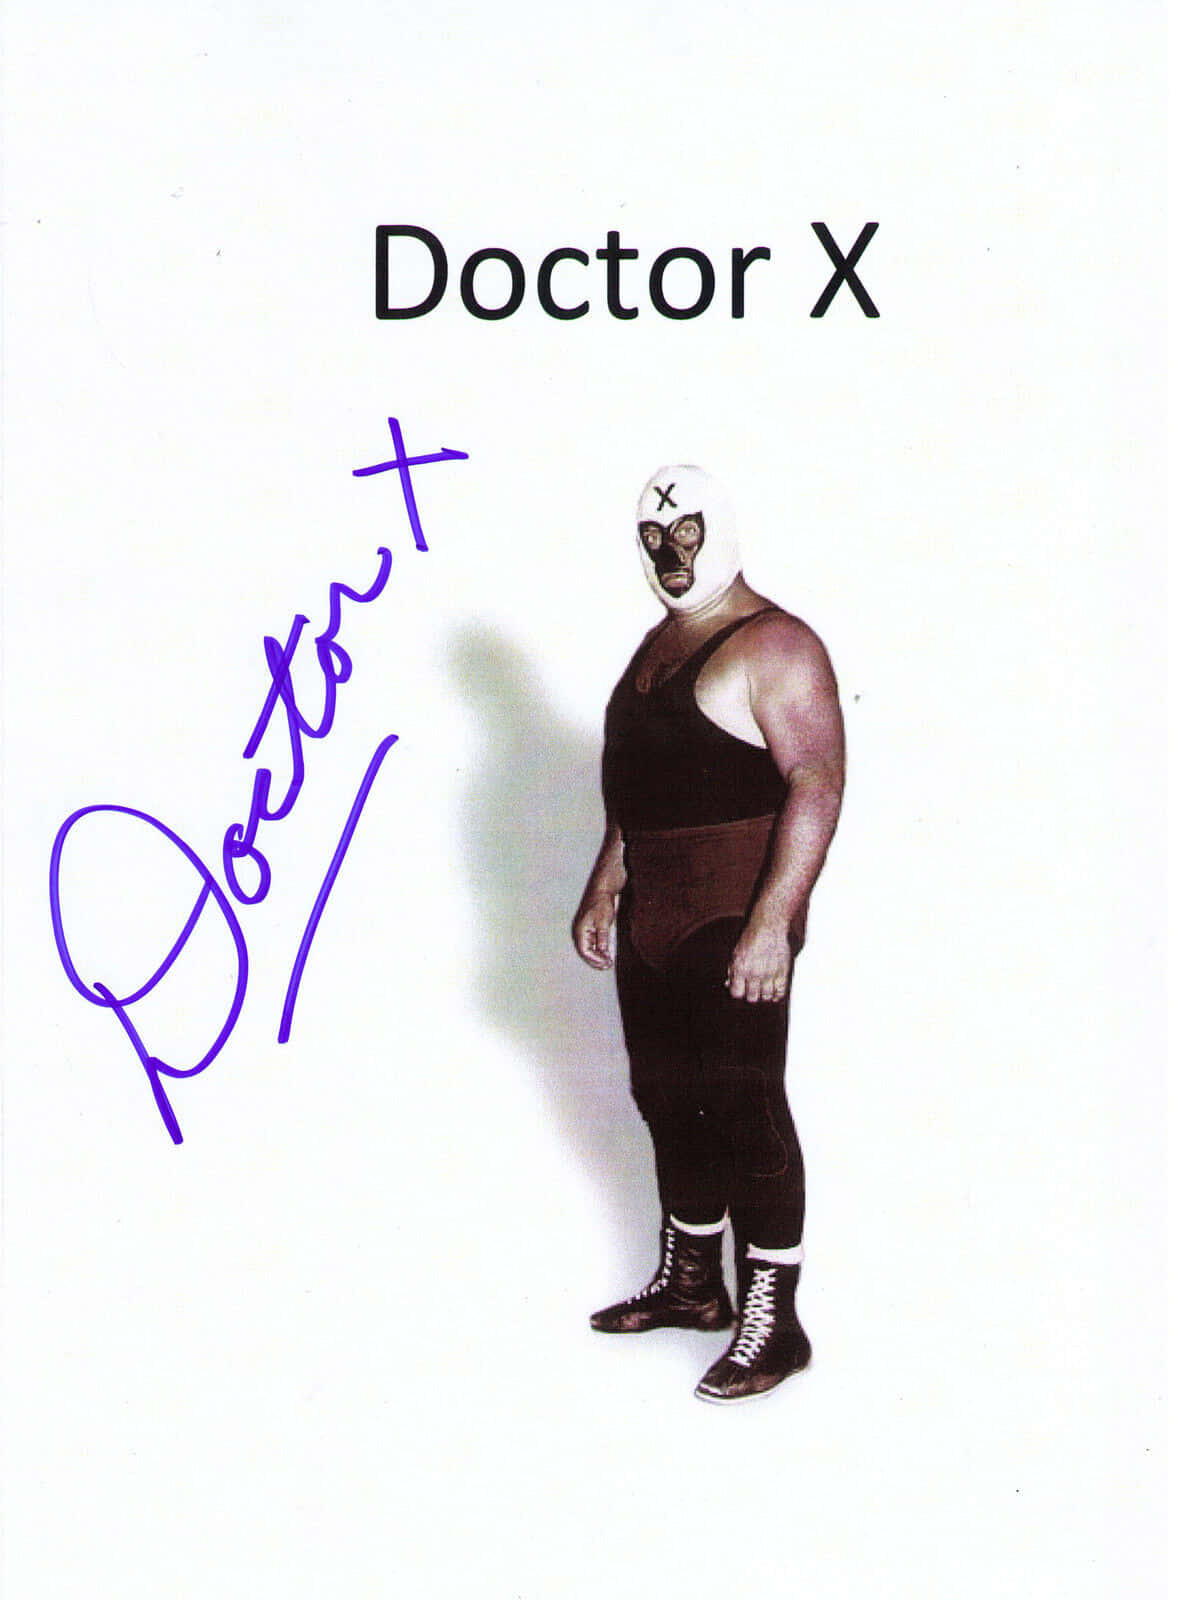 Derzerstörer Doktor X Unterzeichnet Wallpaper